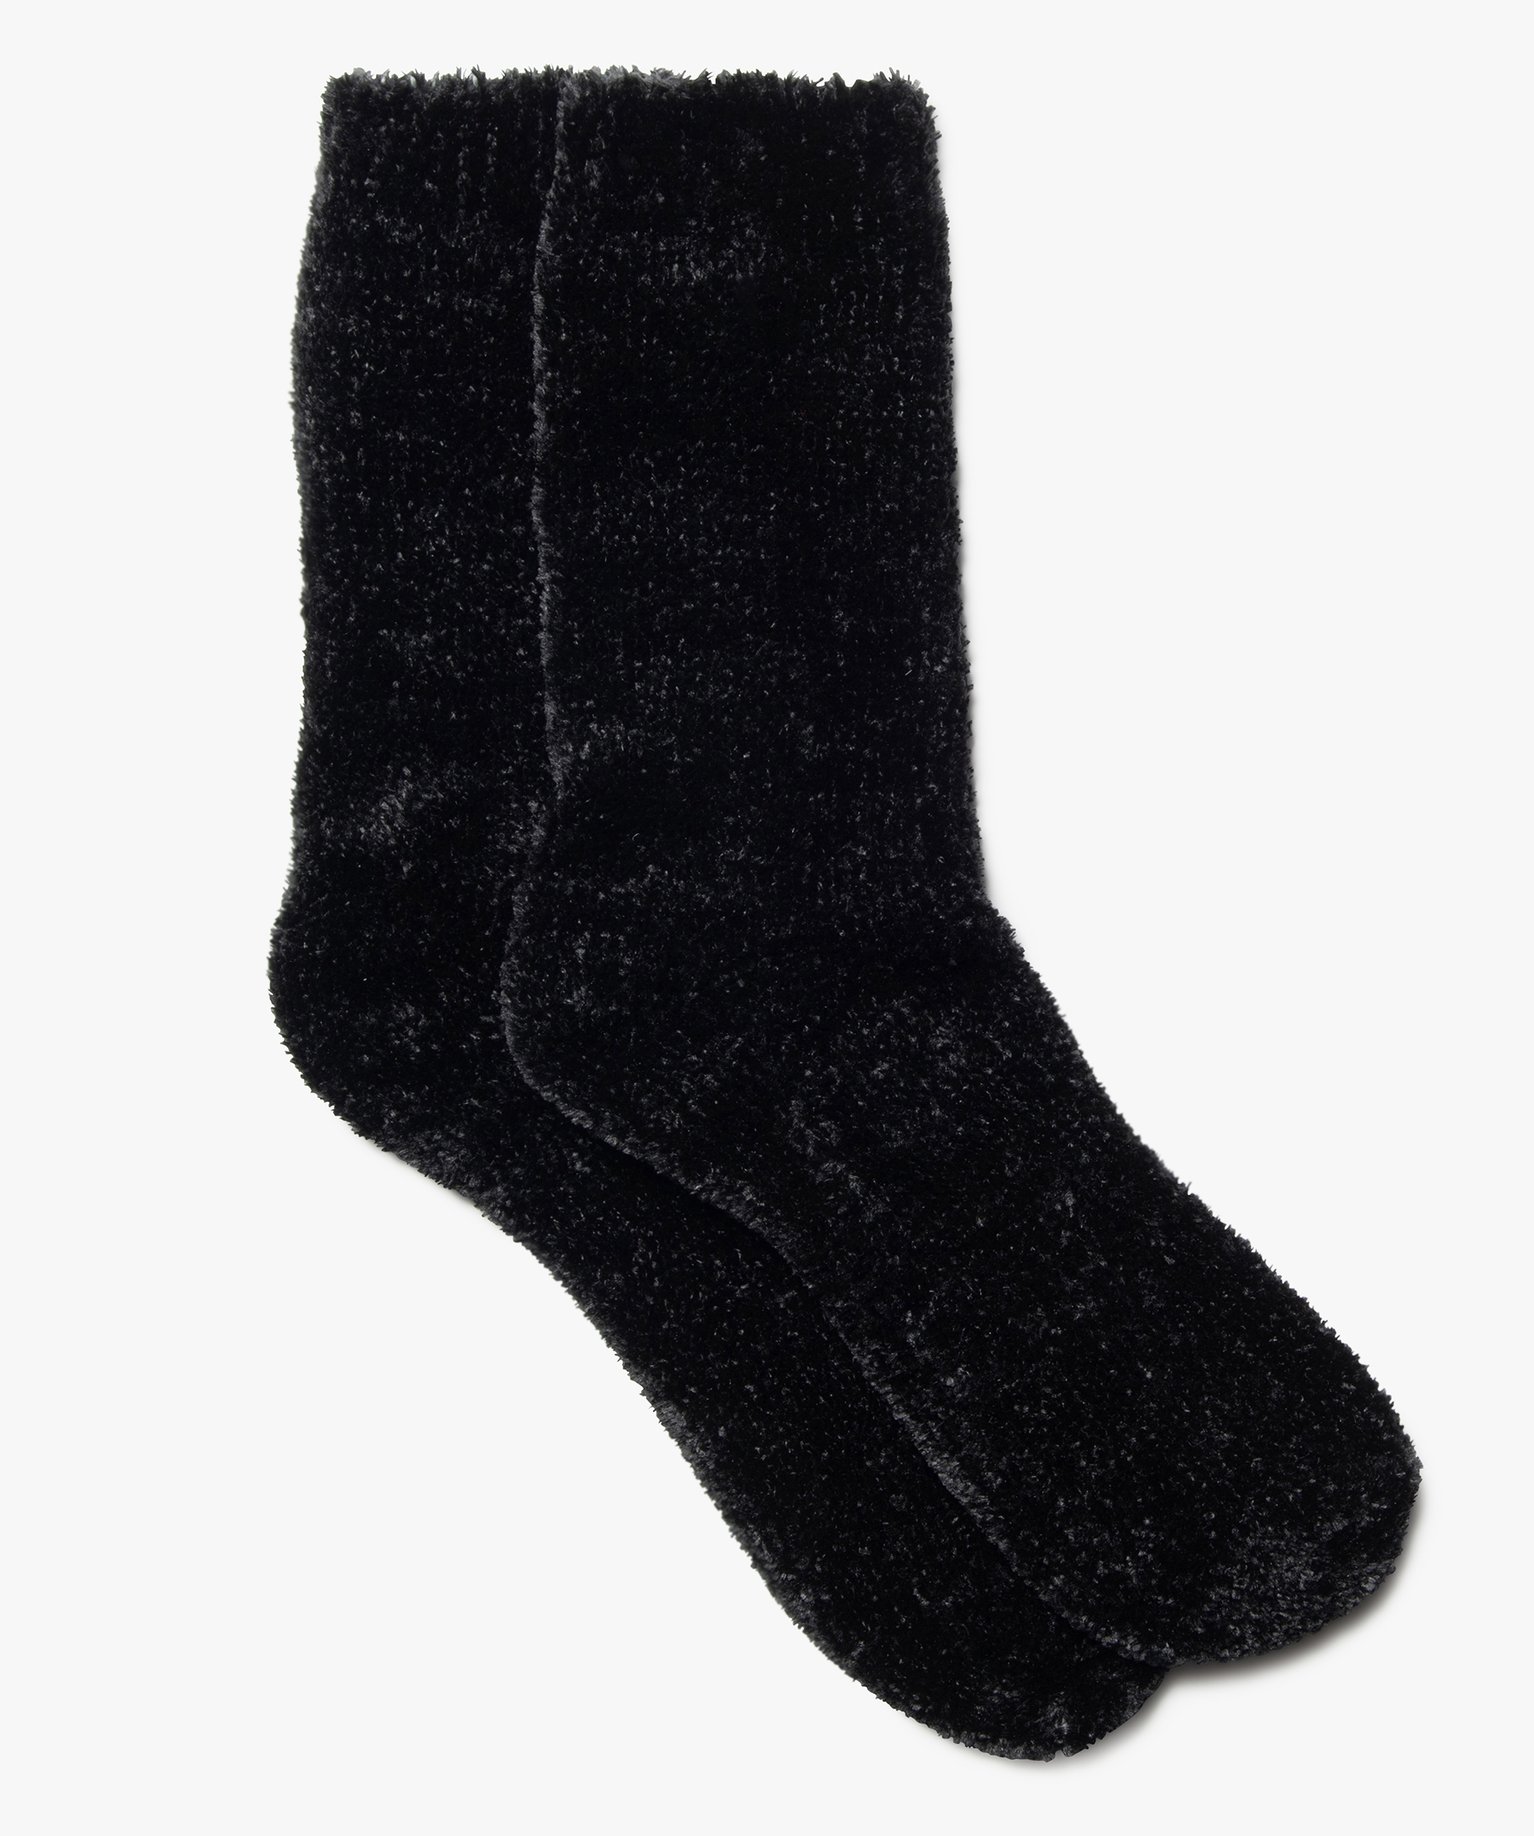 chaussettes femme en maille chenille douce et epaisse noir chaussettes